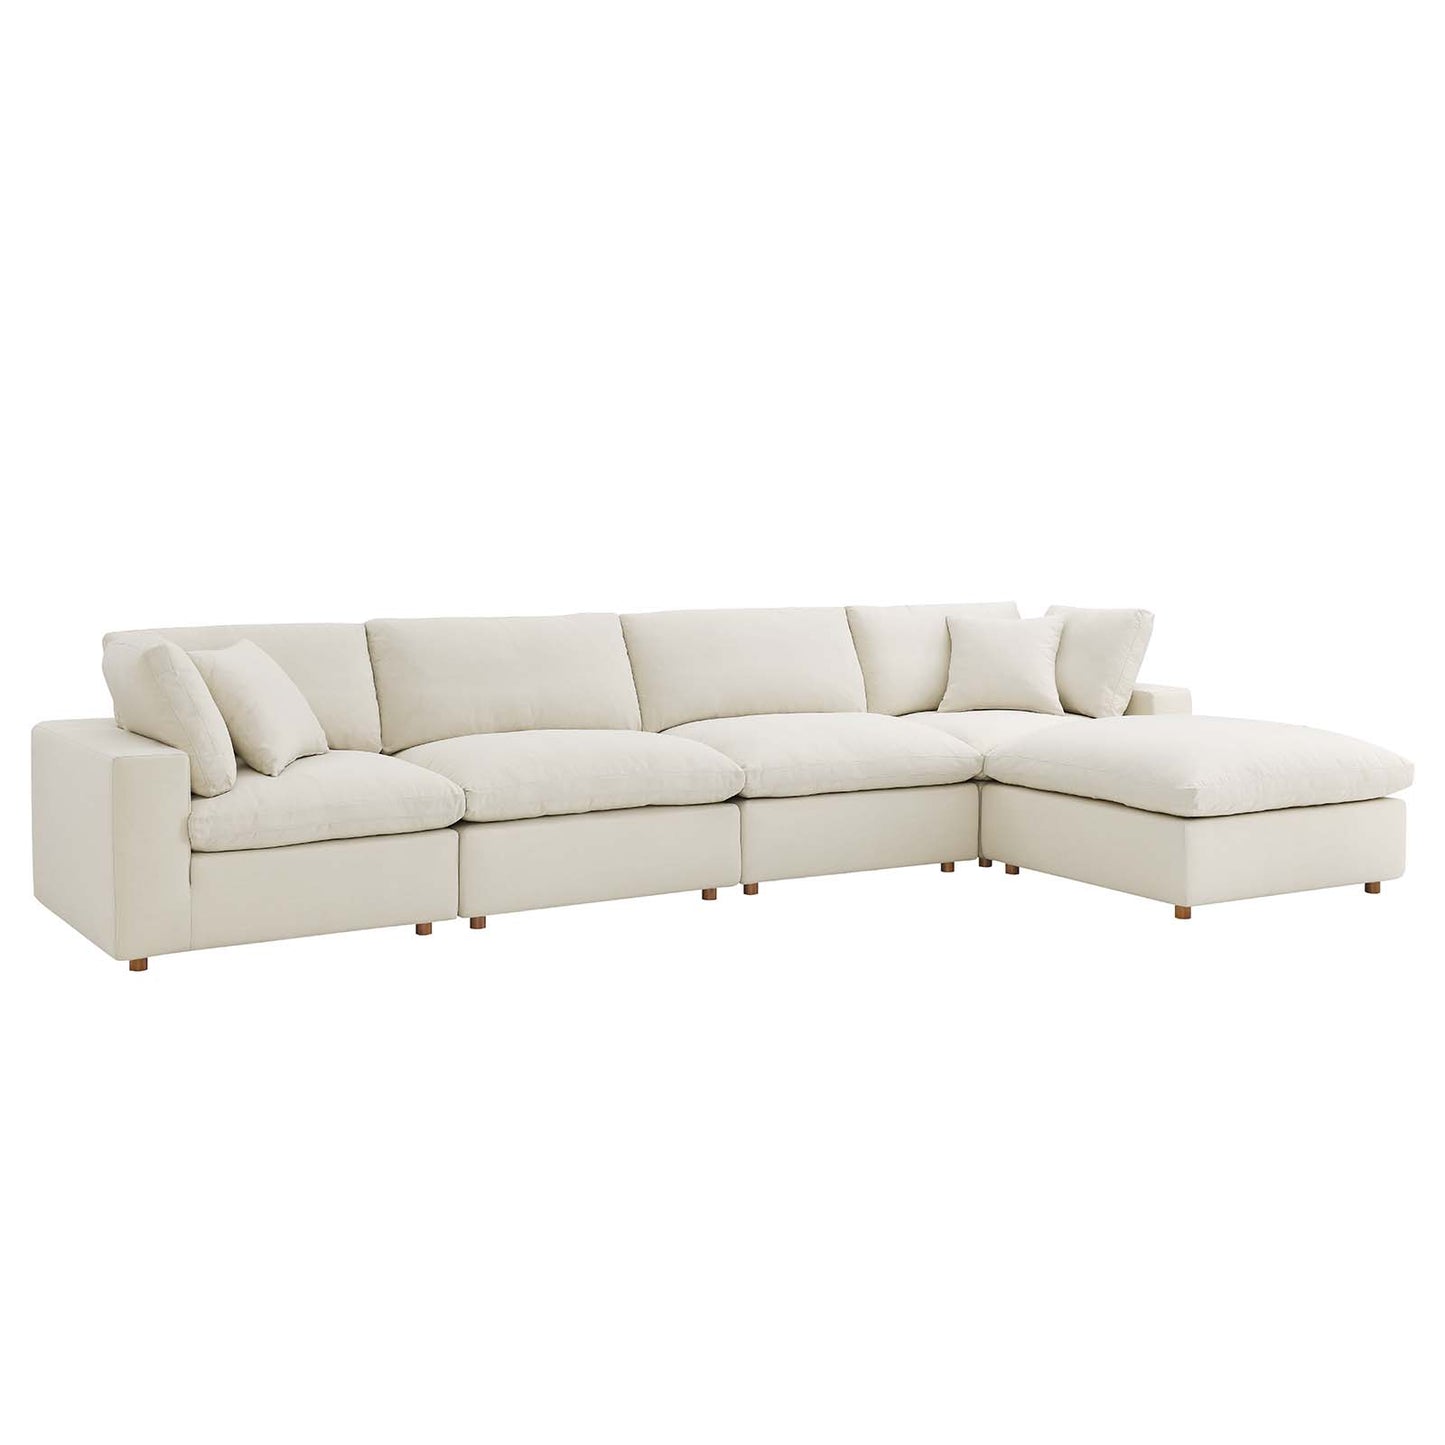 Commix Down Filled Overstuffed 5 Piece Sectional Sofa Set Light Beige EEI-3358-LBG